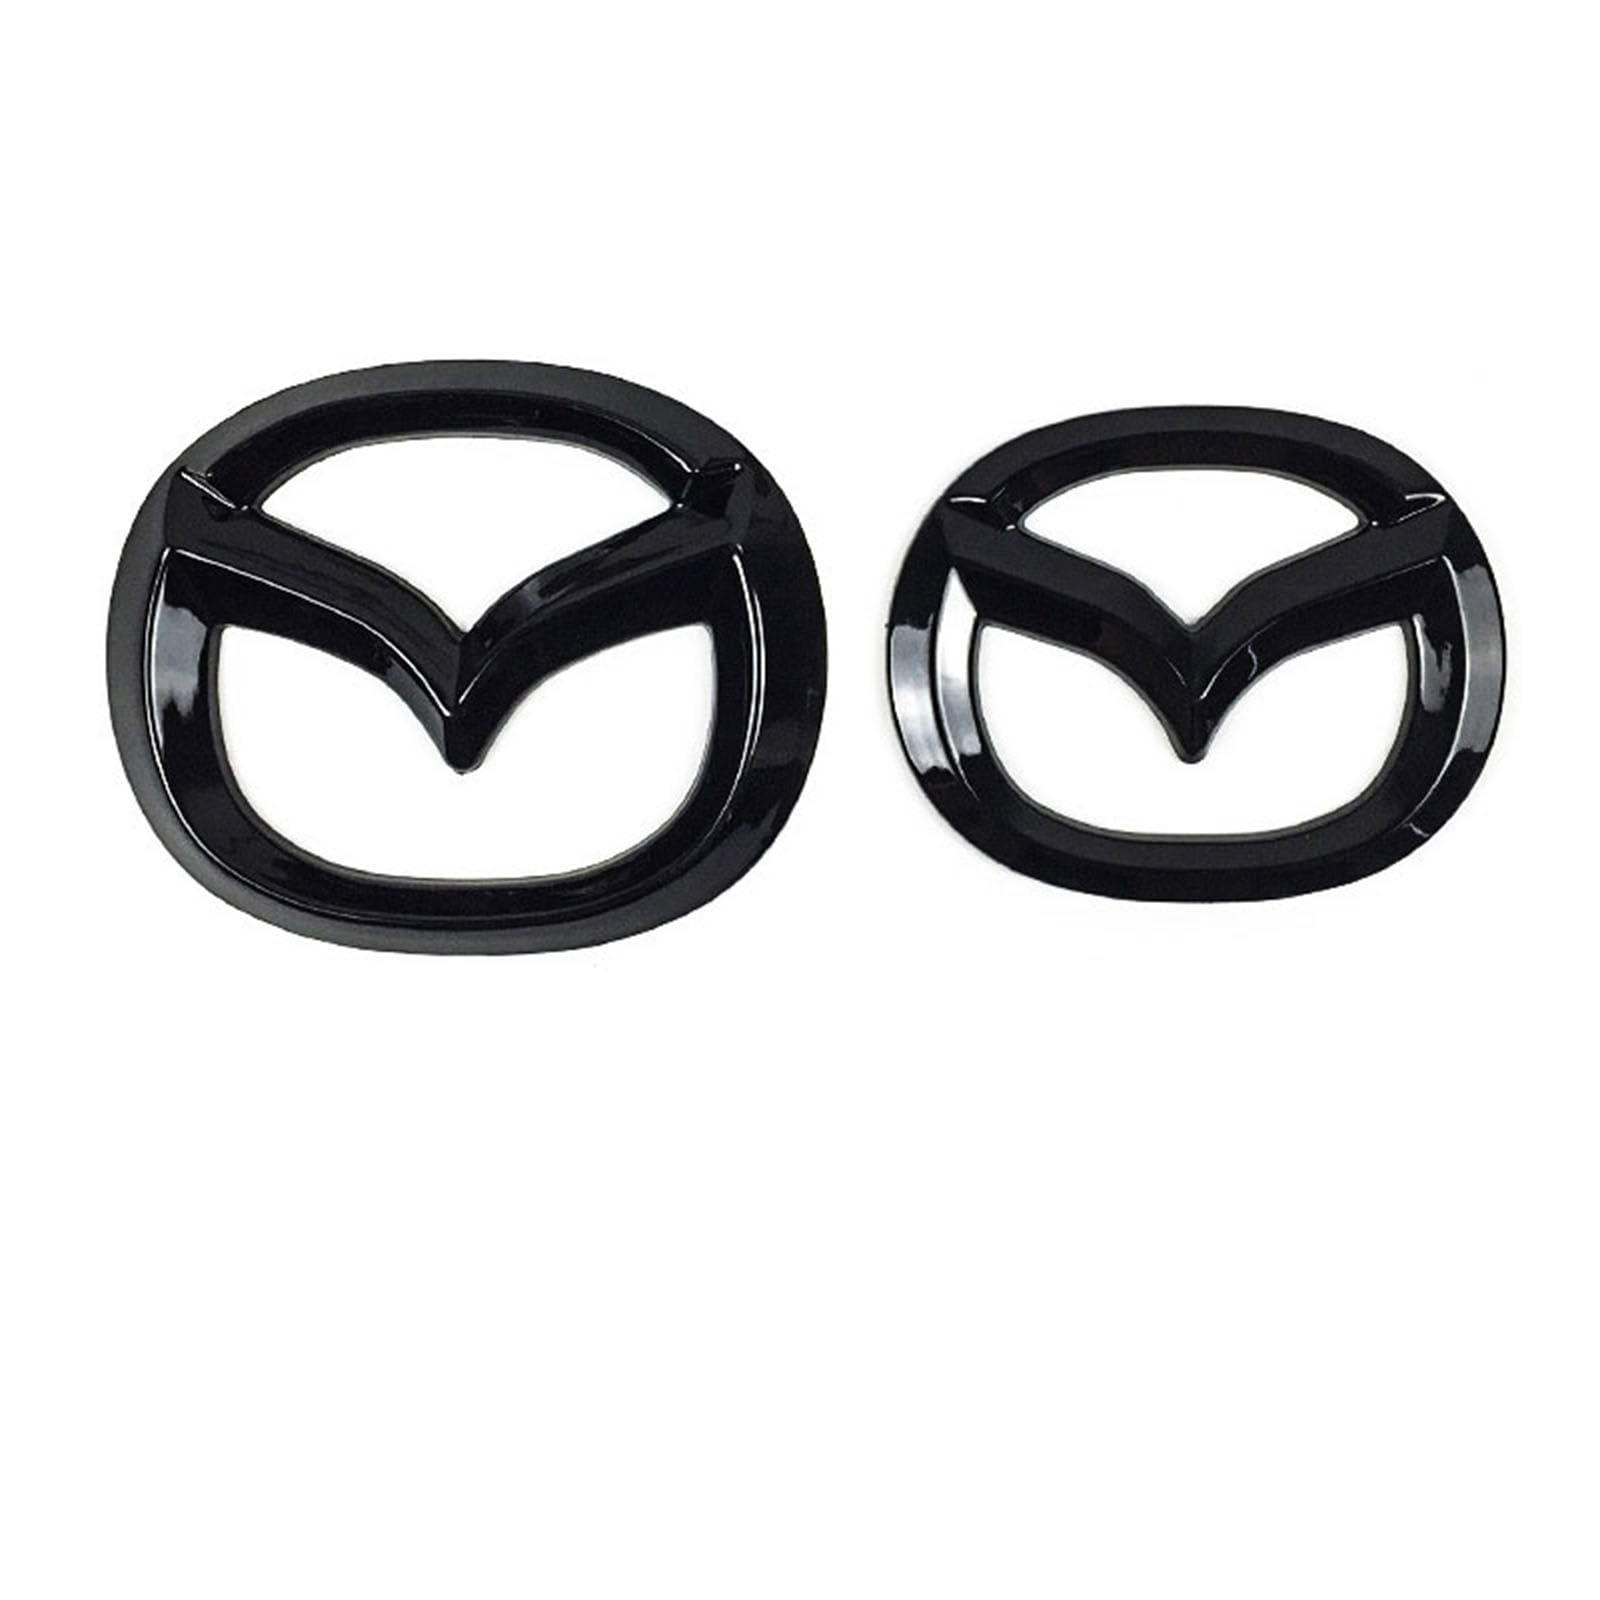 Abzeichen Logo für Mazda CX30, Buchstaben Wort Emblem-Aufkleber,Autoaufkleber Sticker Emblem,Auto Emblem Abziehbilder Styling Dekoratives Emblem,A Bright Black von DURAGS